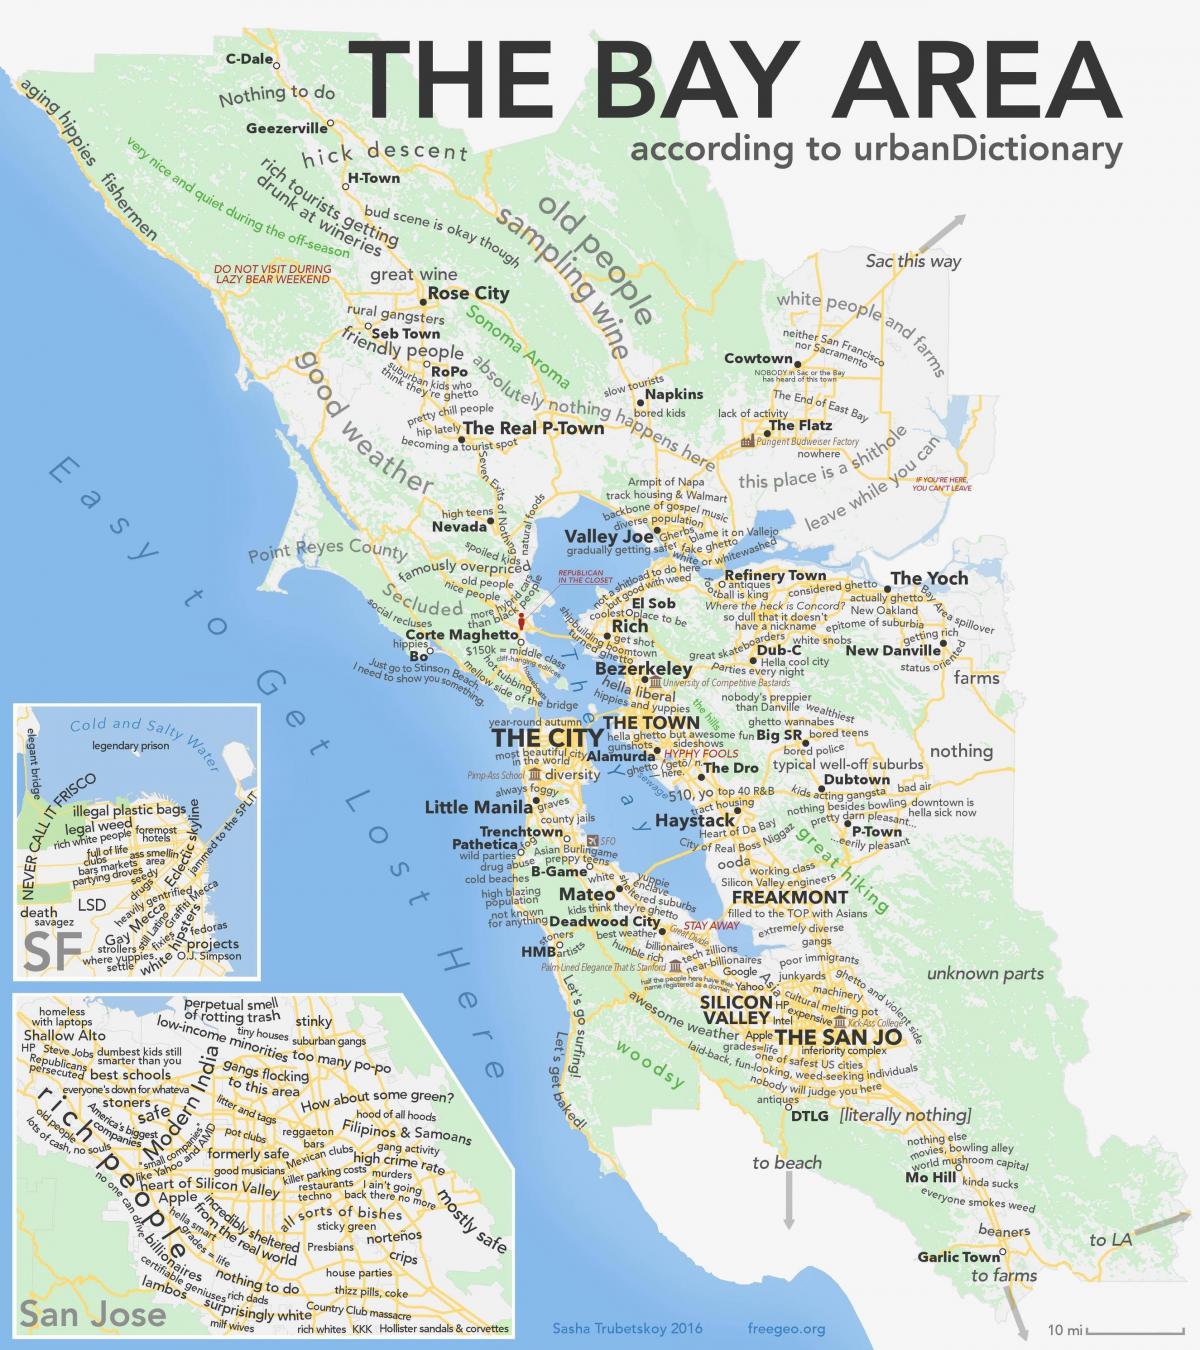 Сан Франциско мапи 